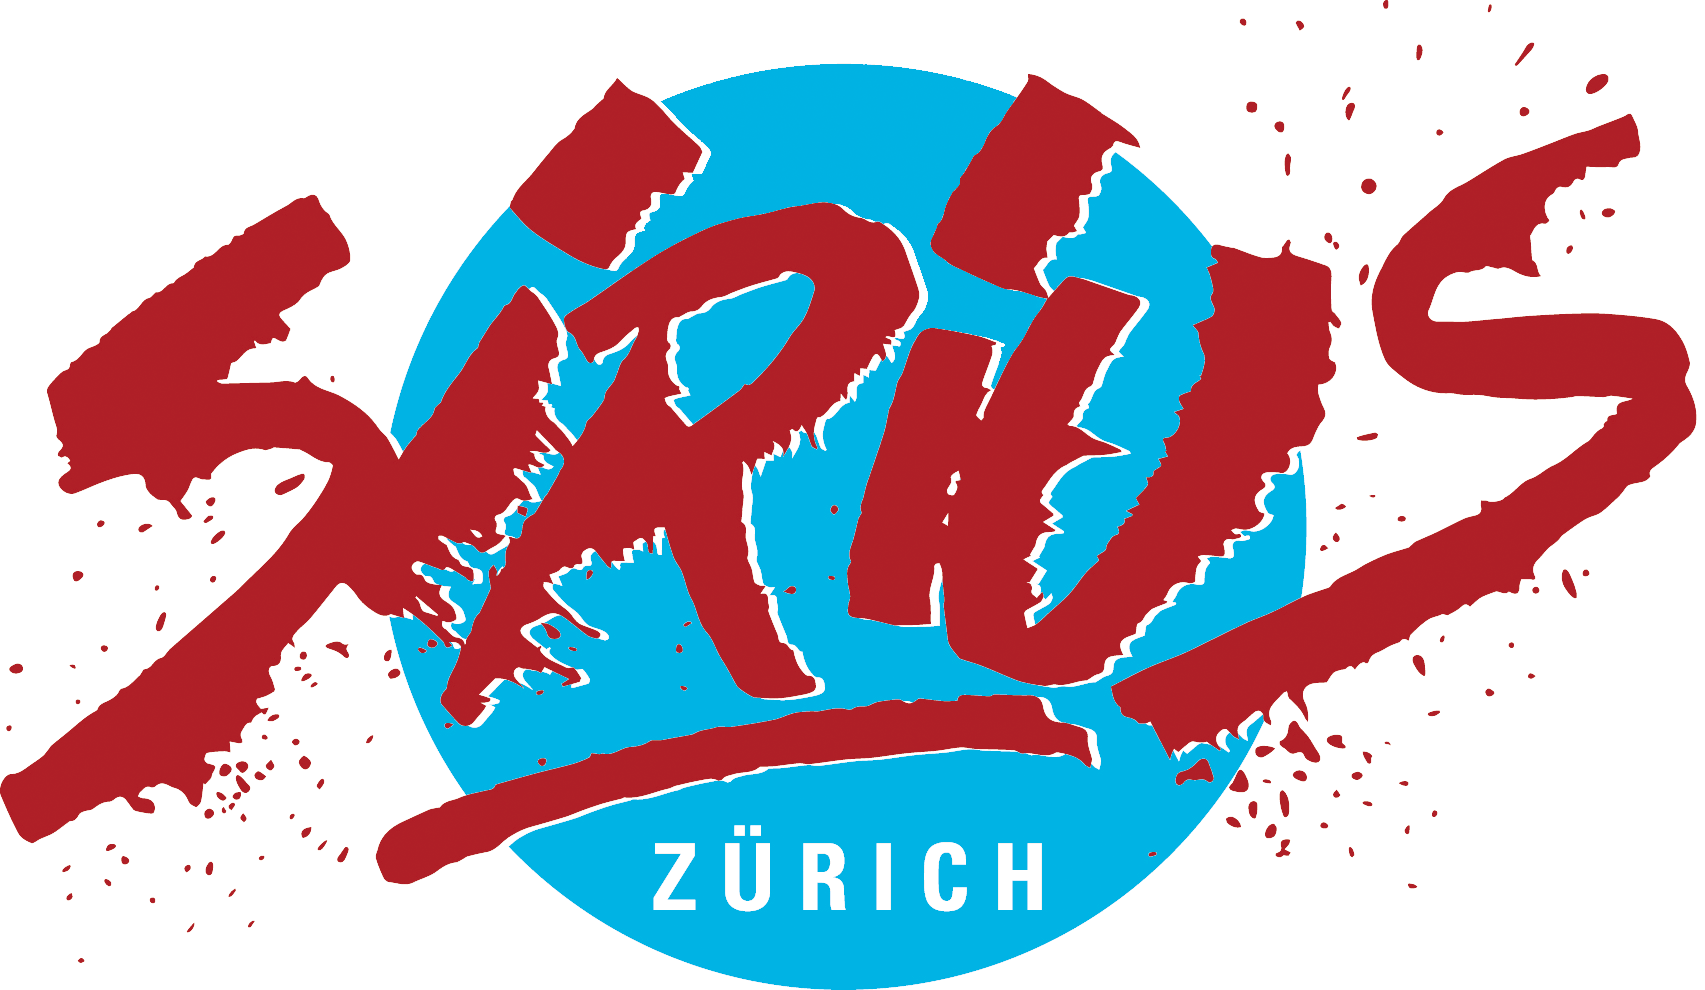 Logo von Sirius